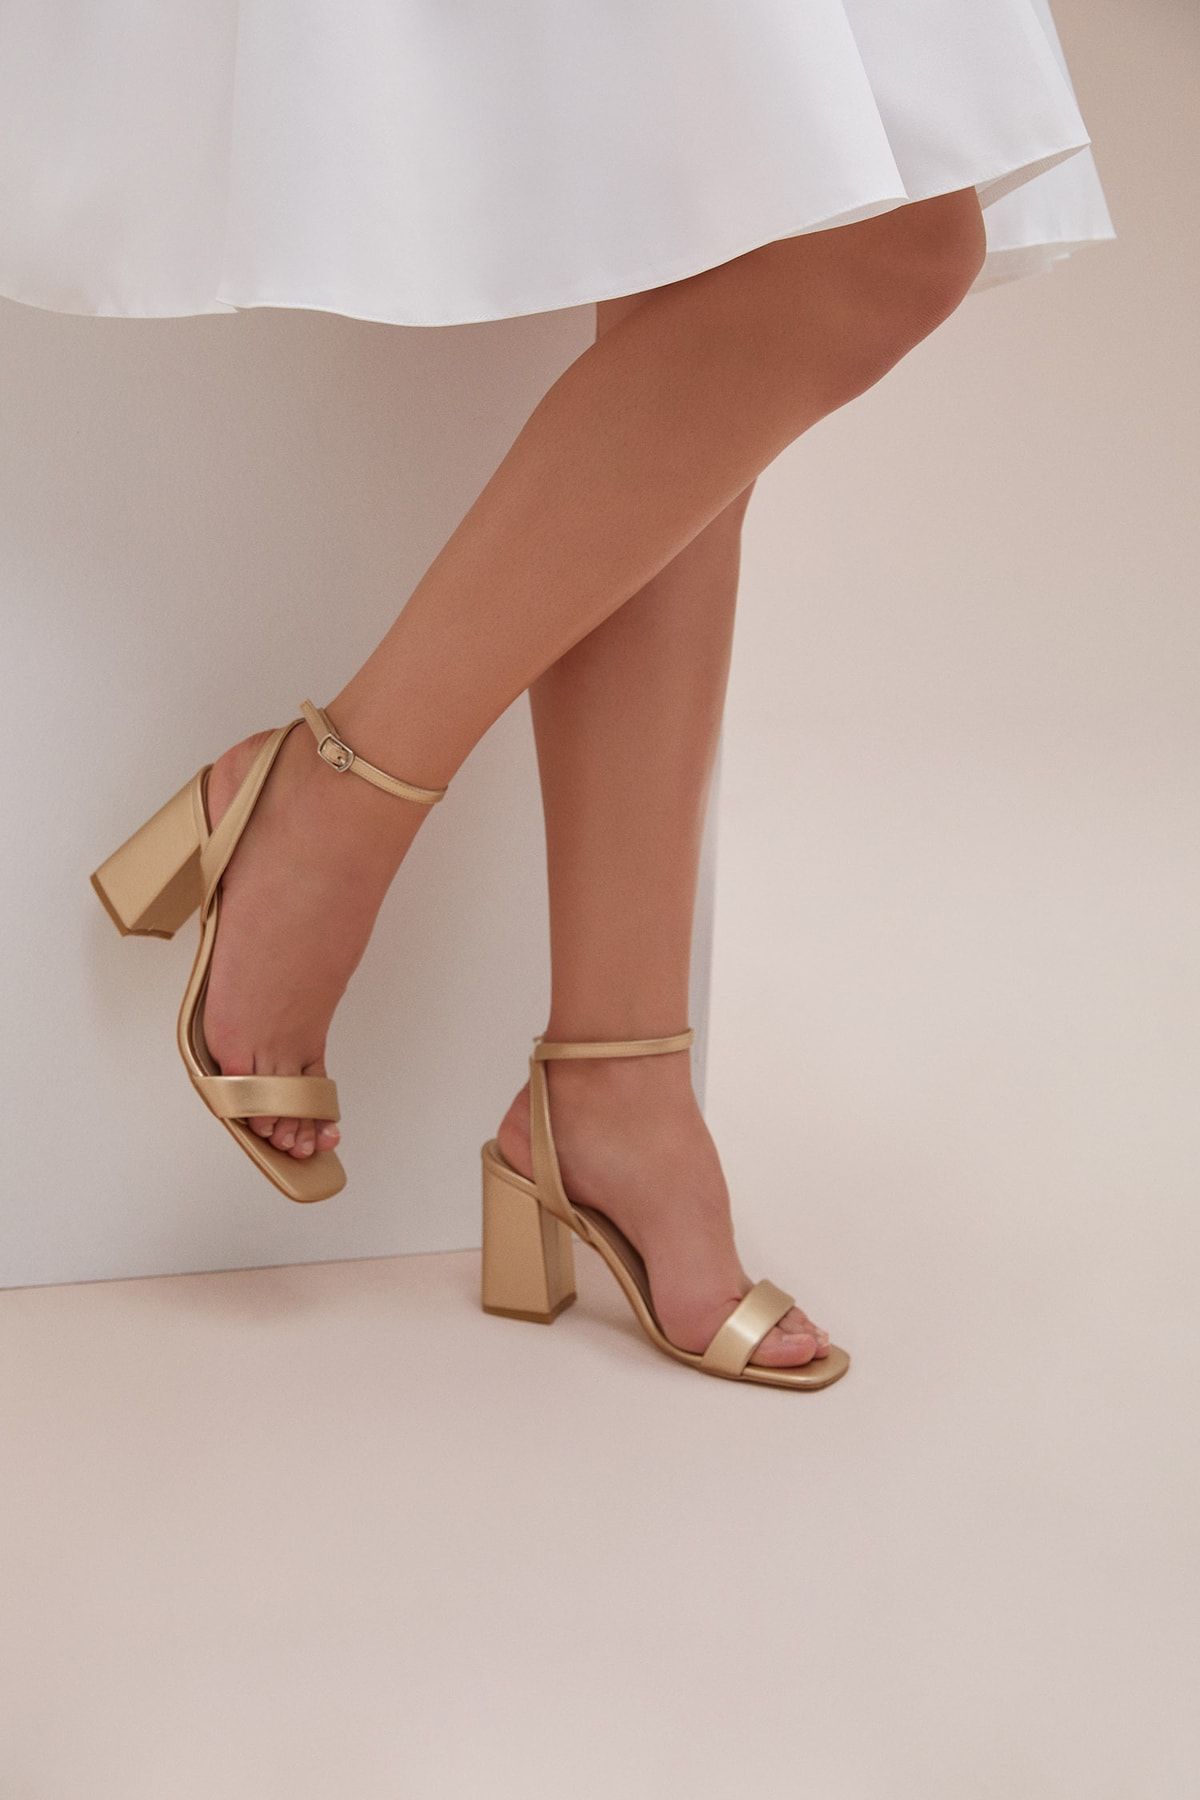 Oleg Cassini Gold Rengi Ince Bantlı Kalın Topuklu Abiye Ayakkabısı